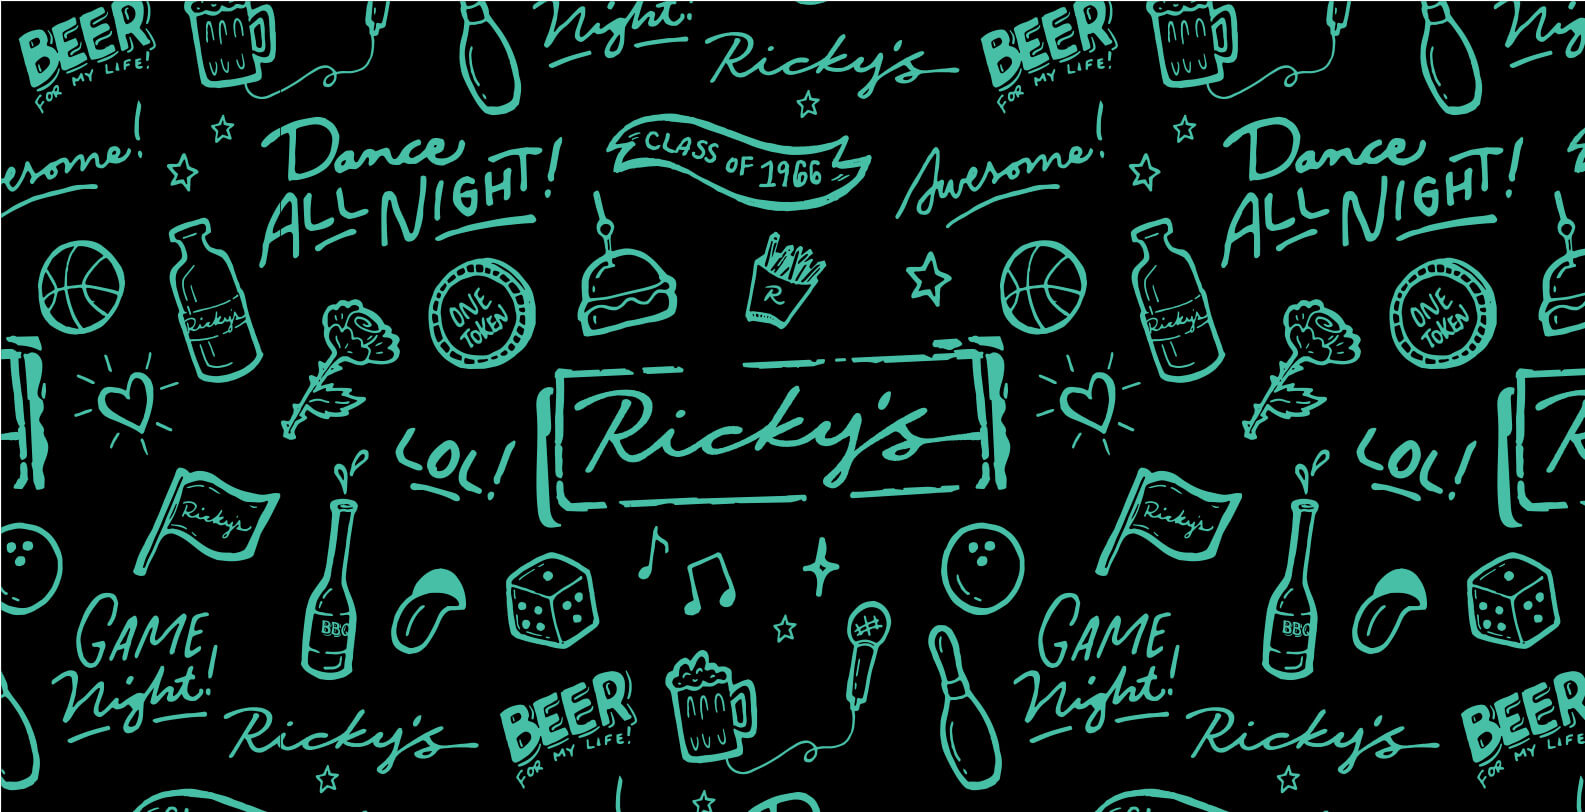 Ricky's branding pattern by Jacober Creative